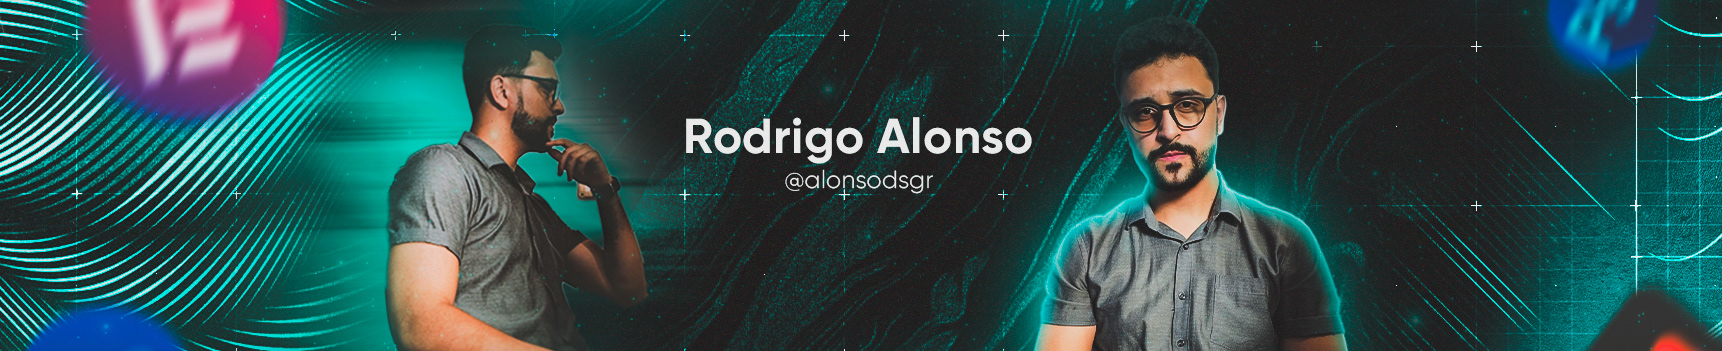 Rodrigo Alonso's profile banner